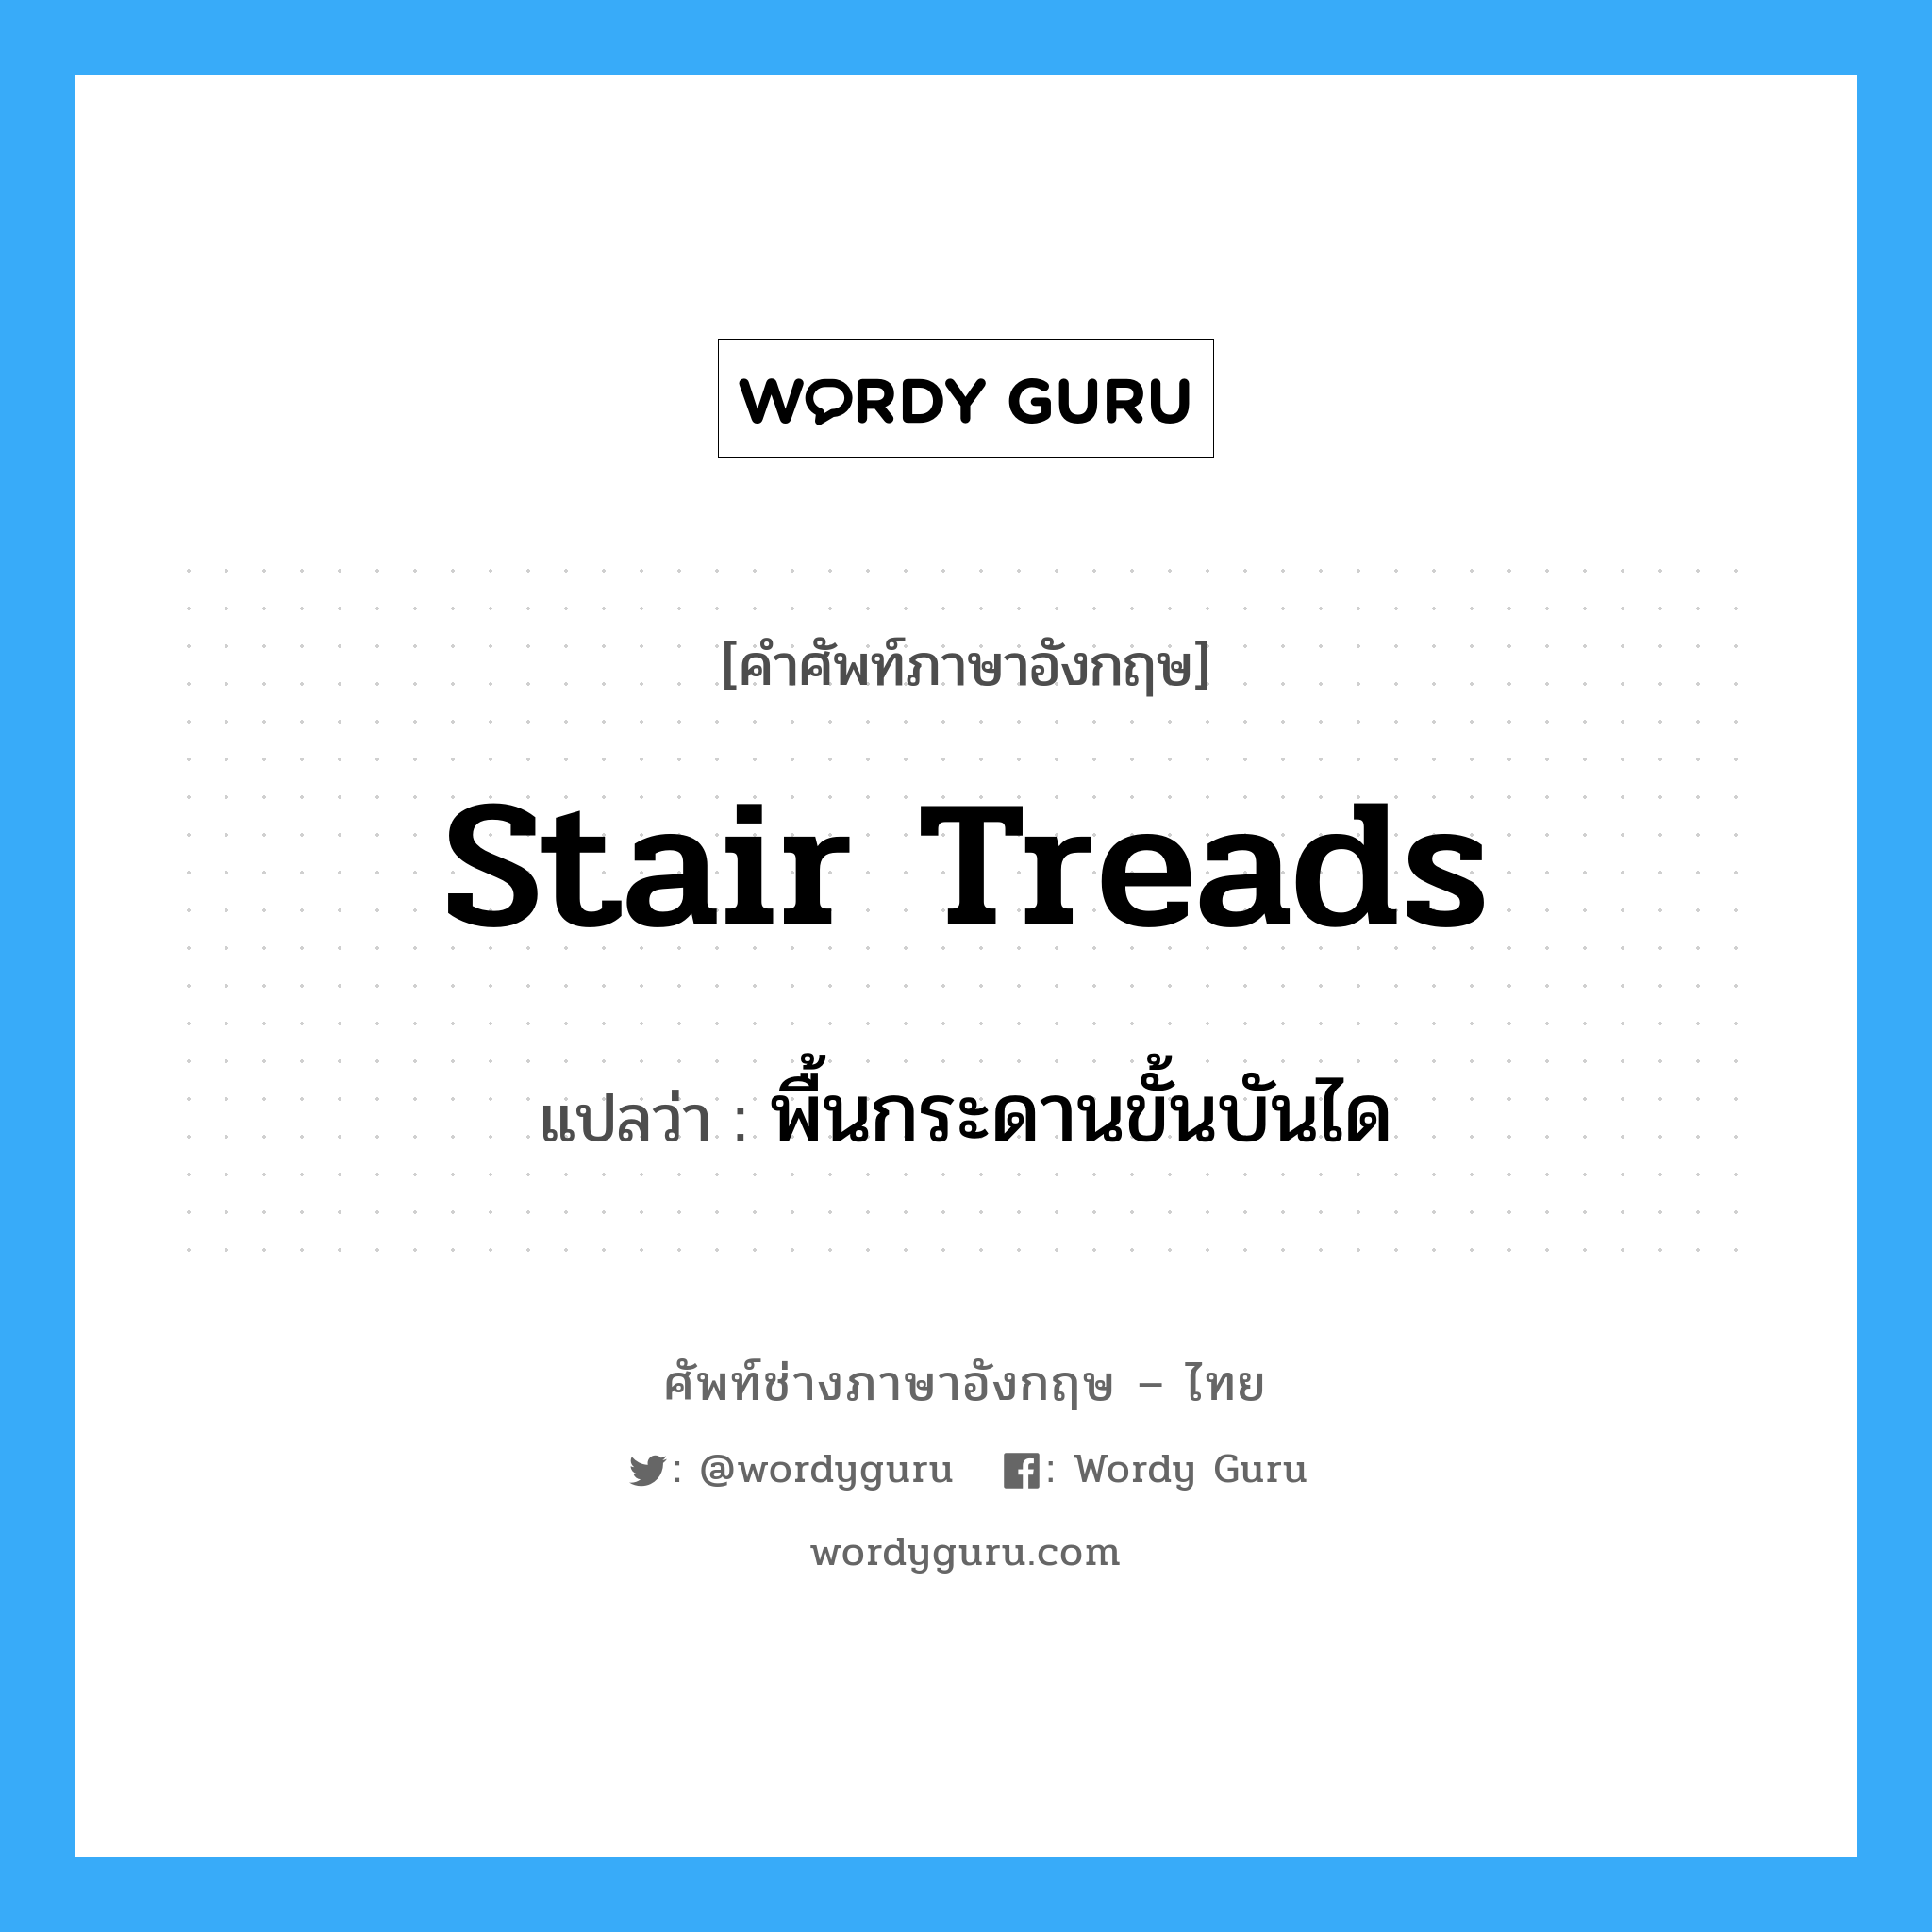 stair treads แปลว่า?, คำศัพท์ช่างภาษาอังกฤษ - ไทย stair treads คำศัพท์ภาษาอังกฤษ stair treads แปลว่า พื้นกระดานขั้นบันได